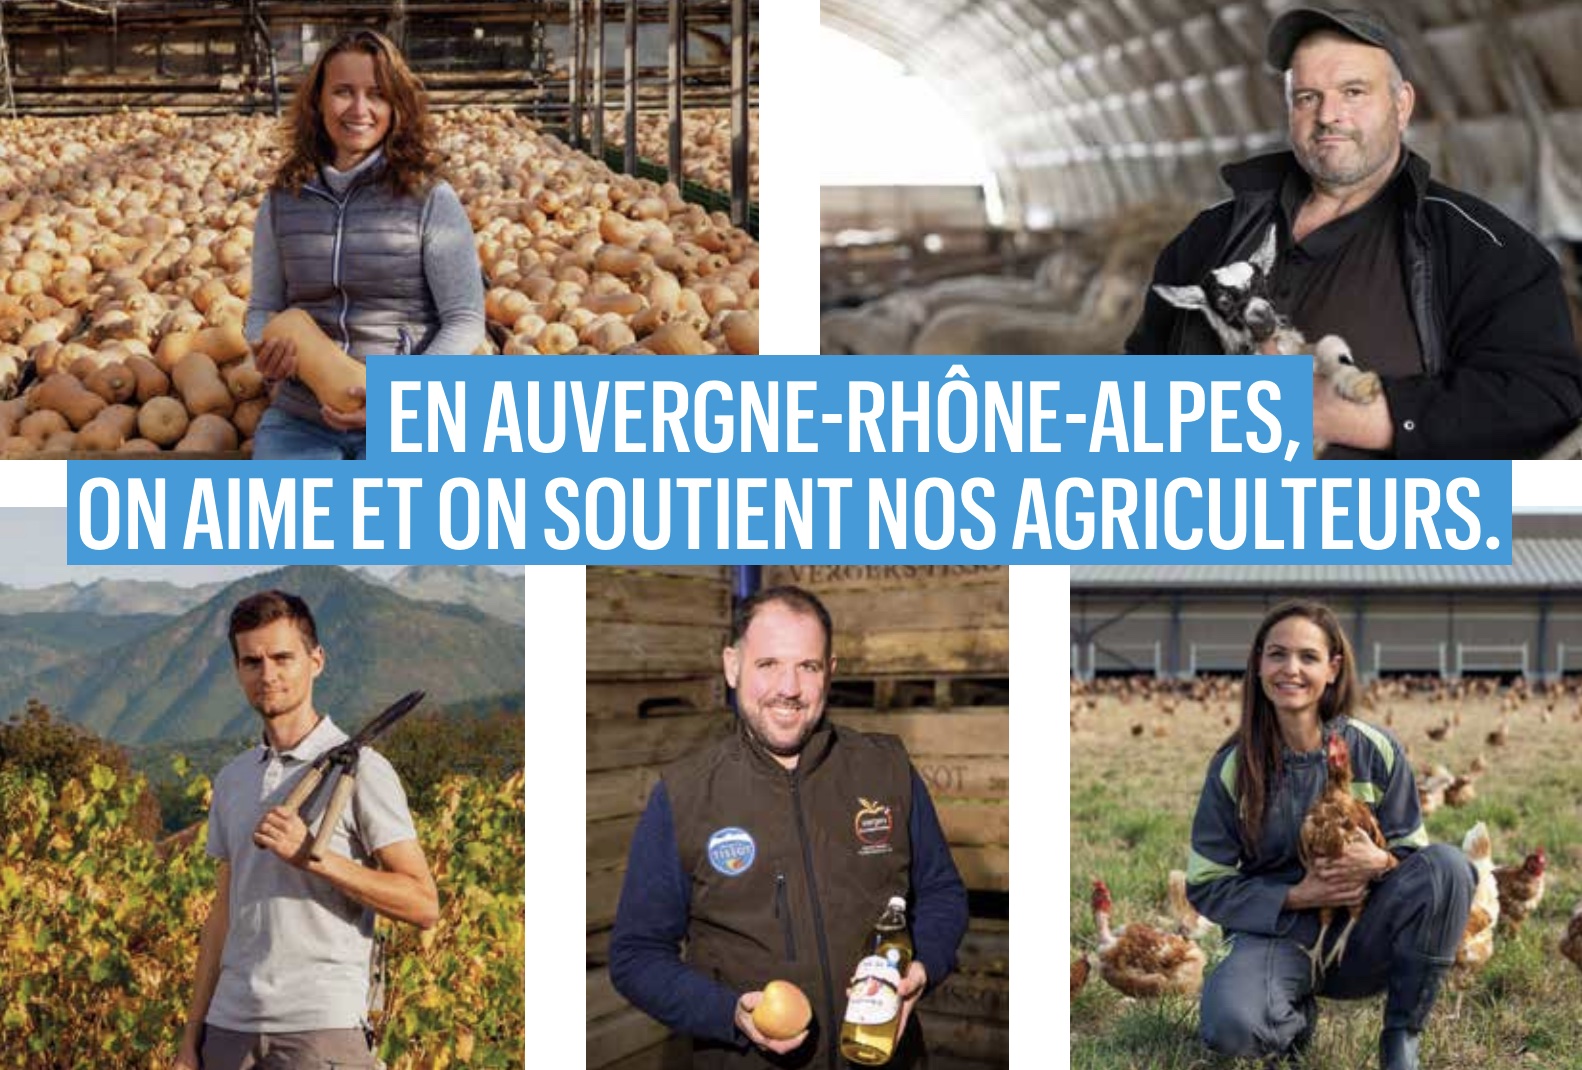 En Auvergne Rhône Alpes on aime et on soutient notre agriculture